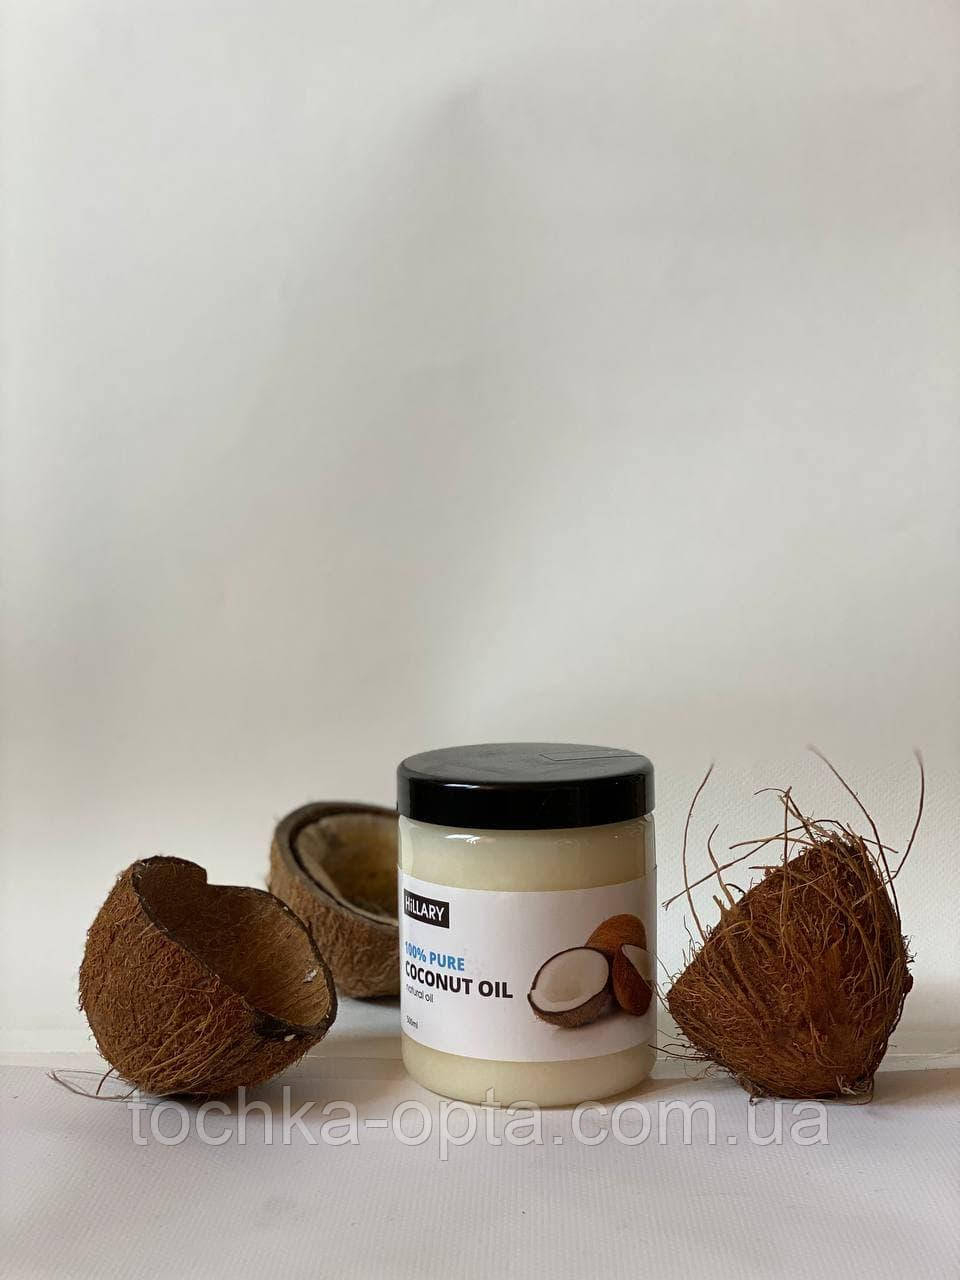 Рафінована кокосова олія Hillary 100% Pure Coconut Oil, 500 мл